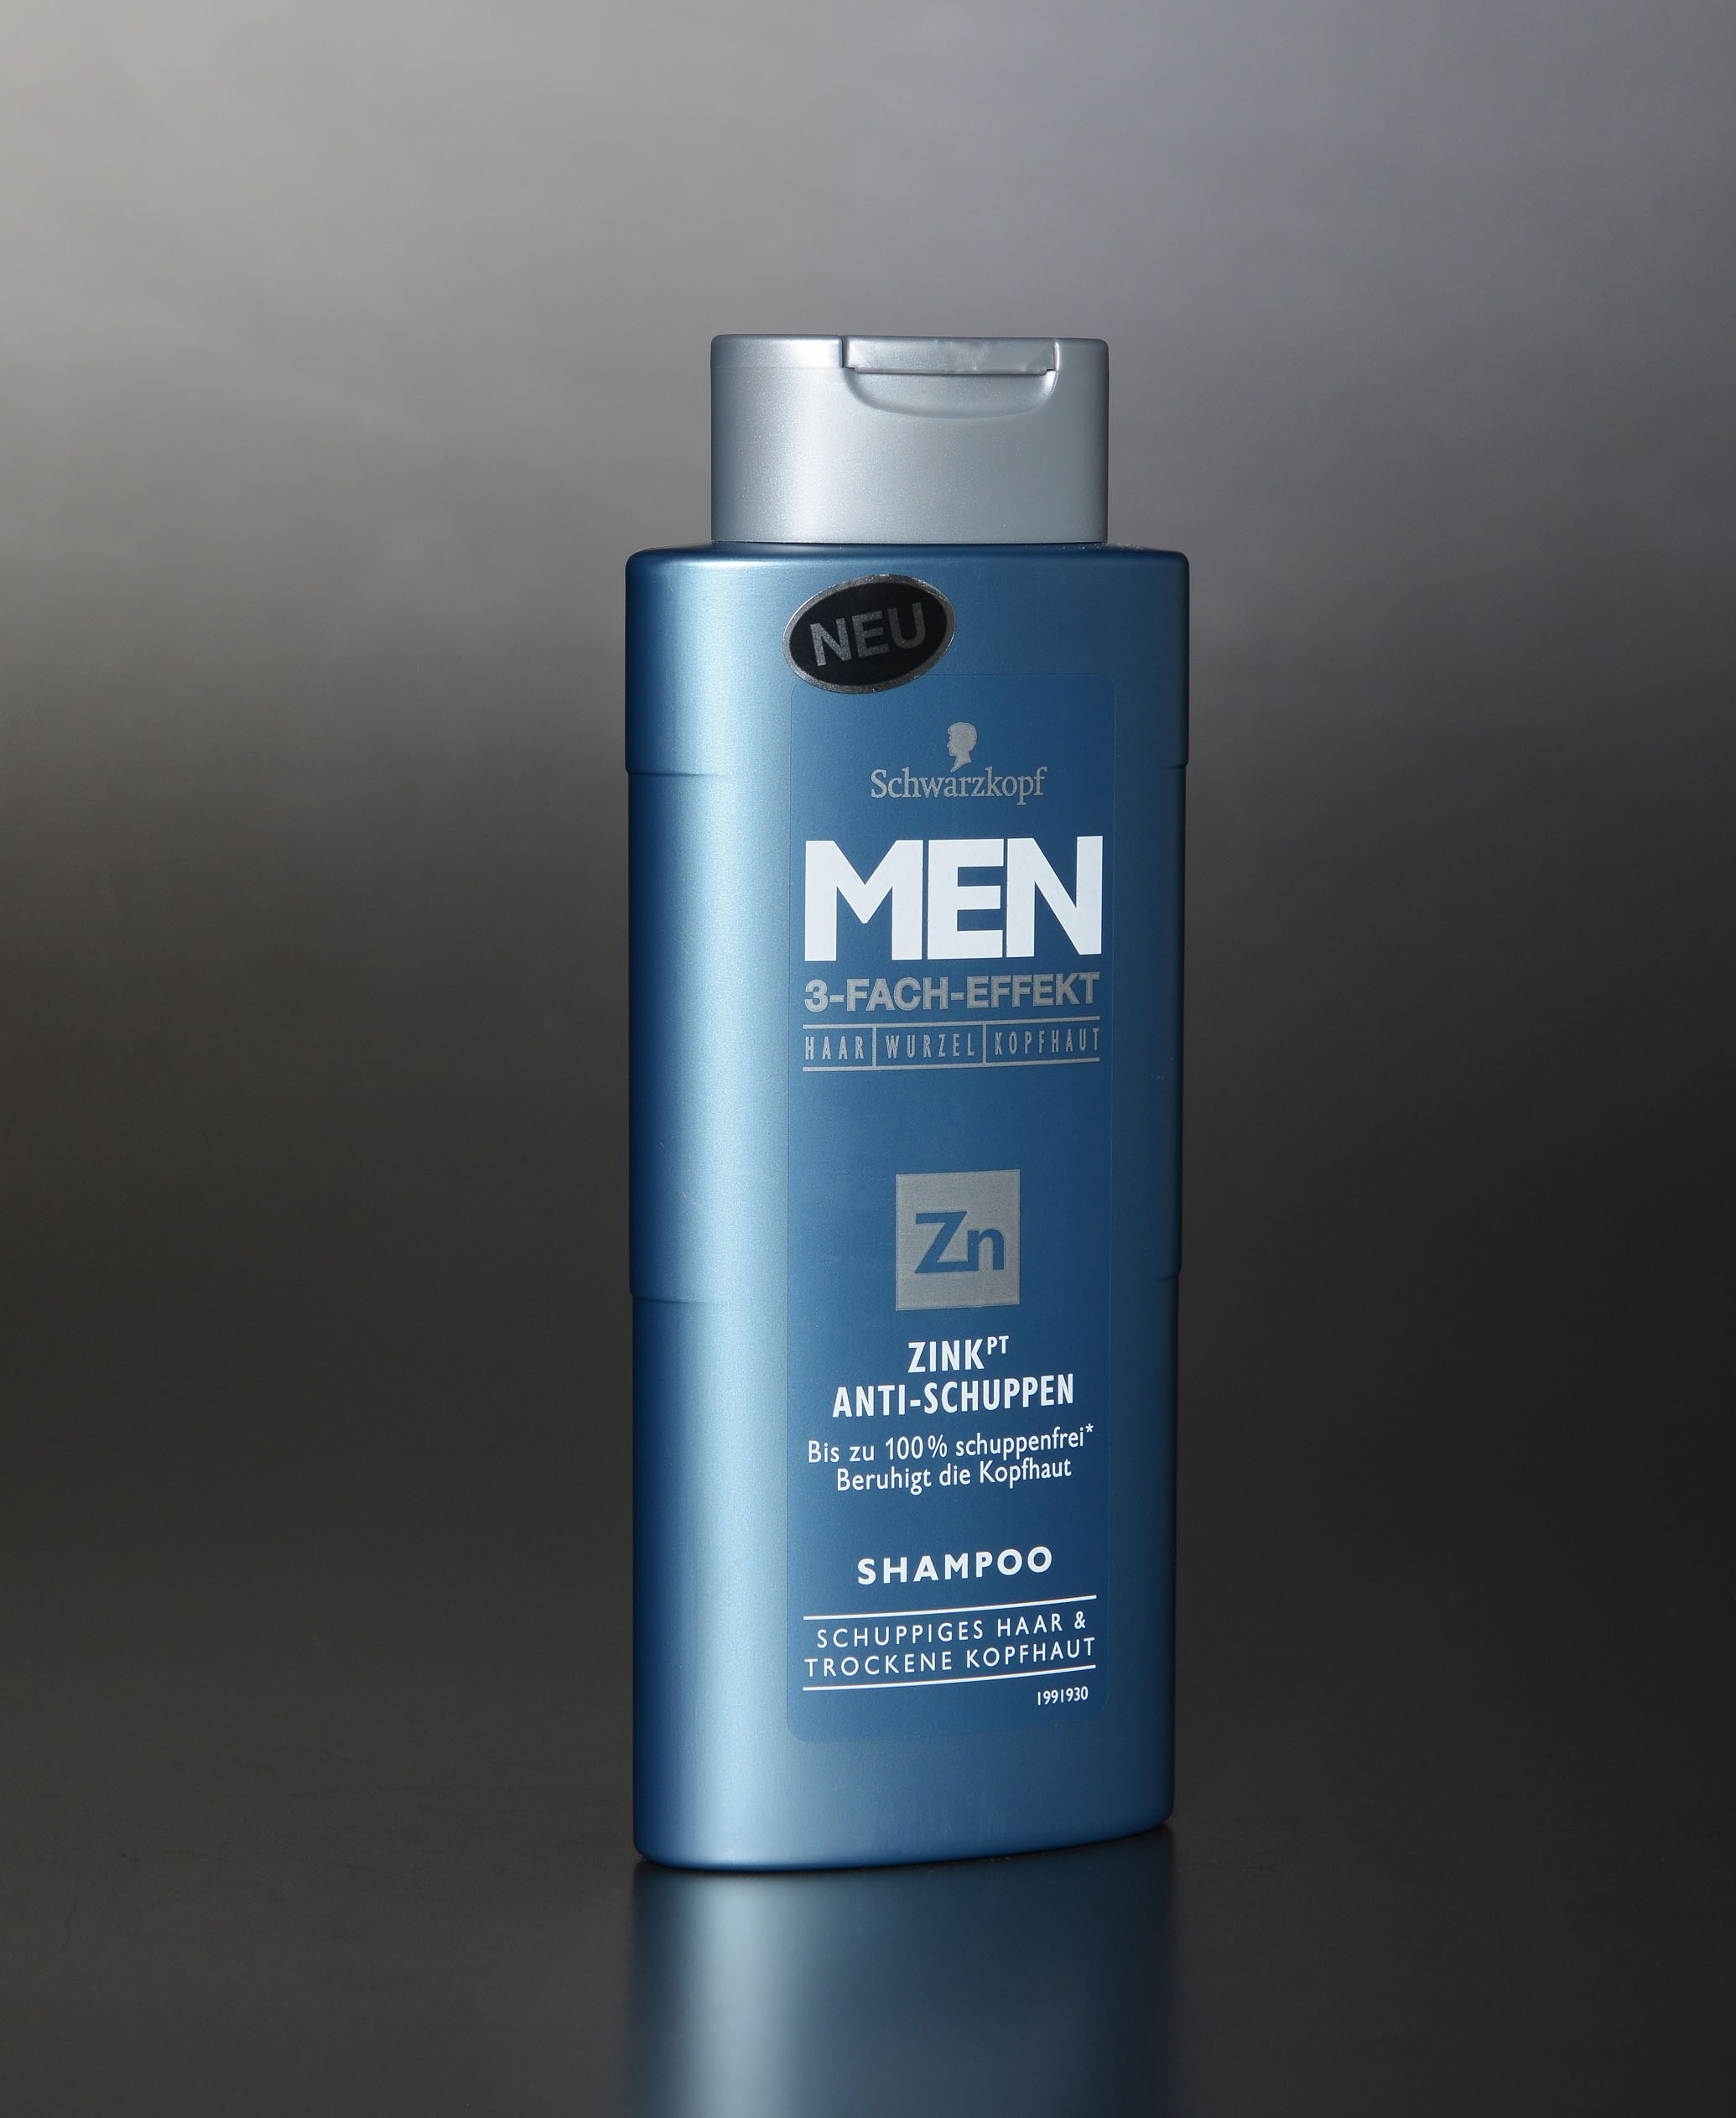 RPC creates for men new shampoo bottle